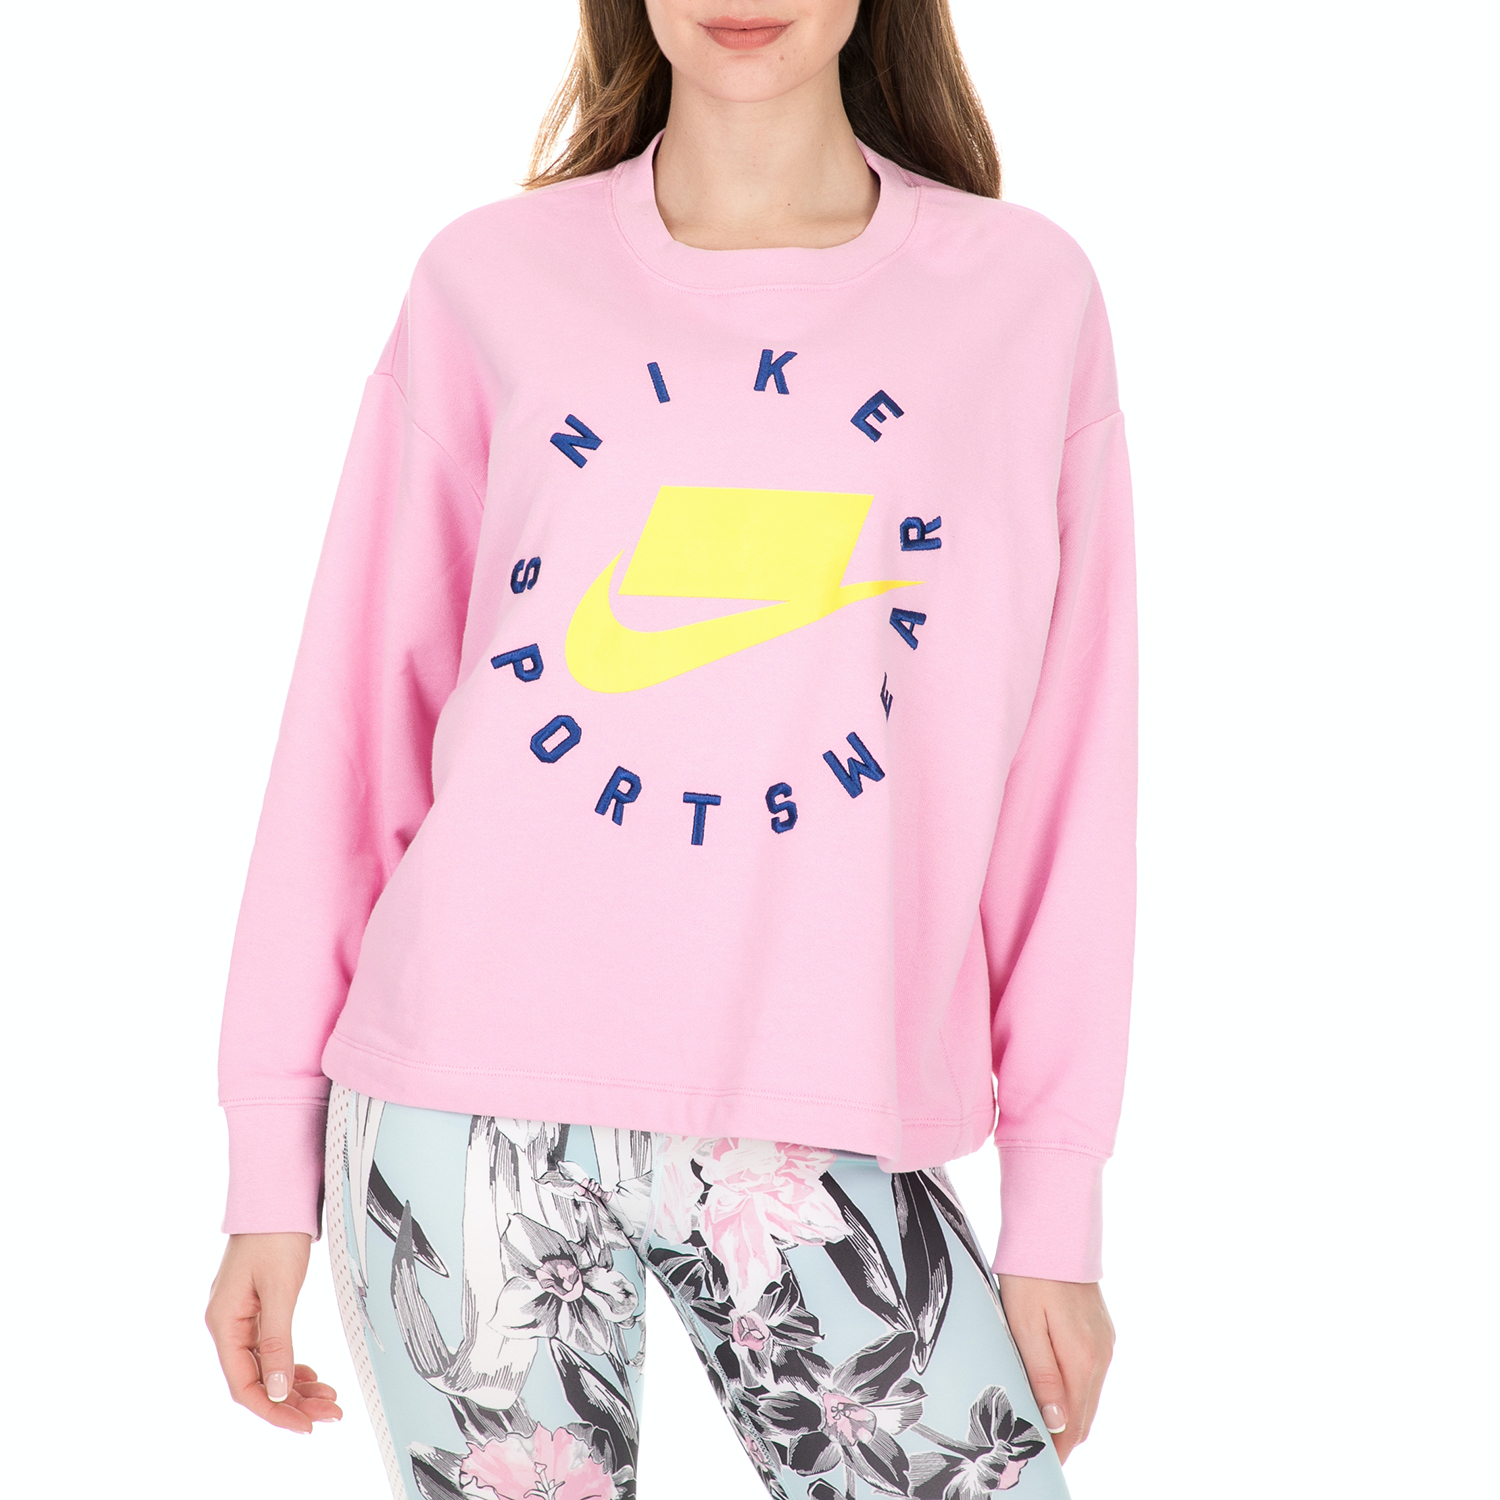 Γυναικεία/Ρούχα/Αθλητικά/Φούτερ-Μακρυμάνικα NIKE - Γυναικεία φούτερ μπλούζα Nike Sportswear ροζ